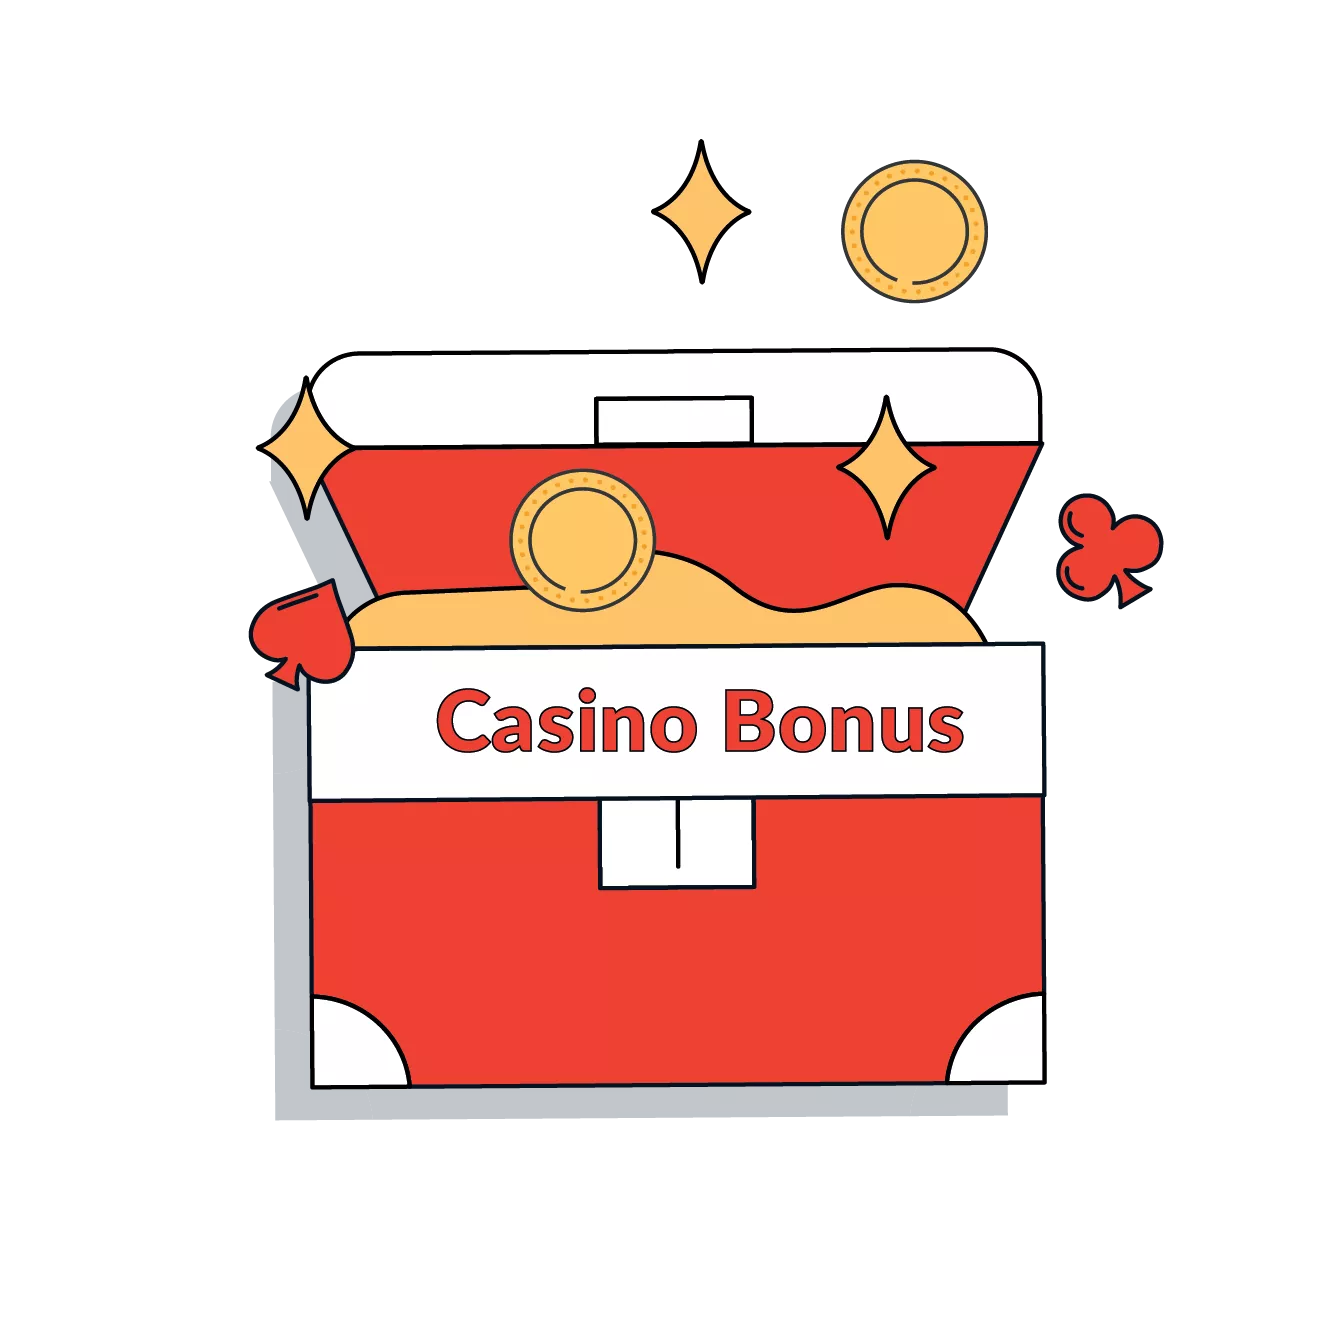 casino bonus featured